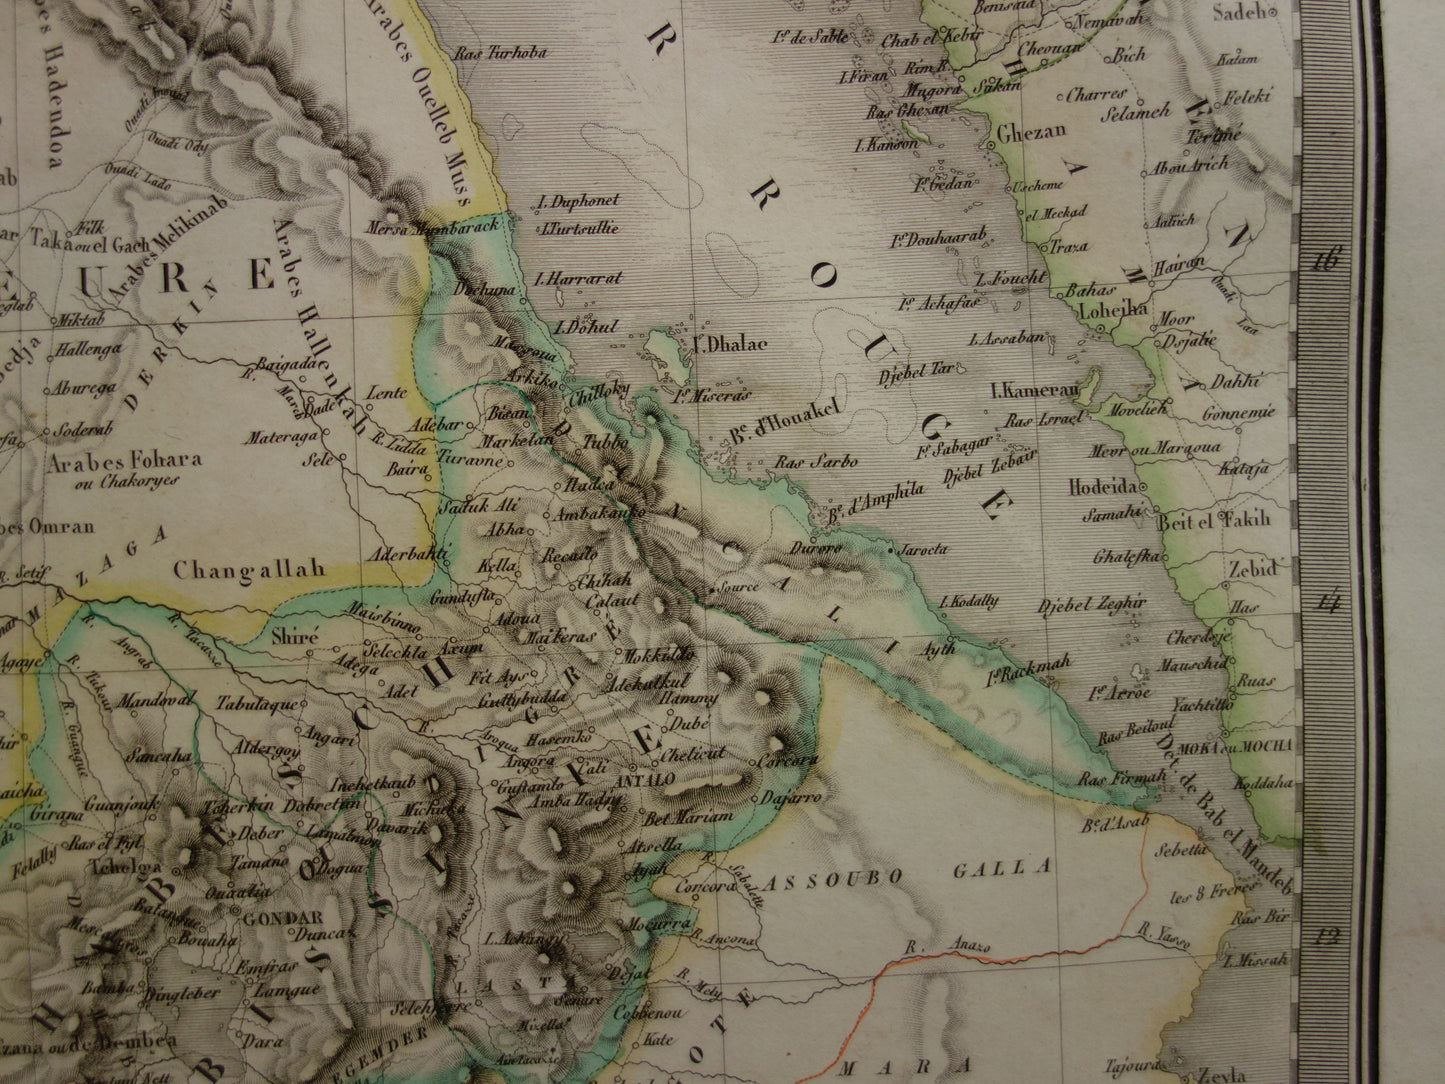 EGYPTE grote oude kaart van Rode Zee regio uit1829 antieke landkaart Sudan, Djibouti, Ethiopië en Saoedi-Arabië met jaartal - vintage poster Afrika